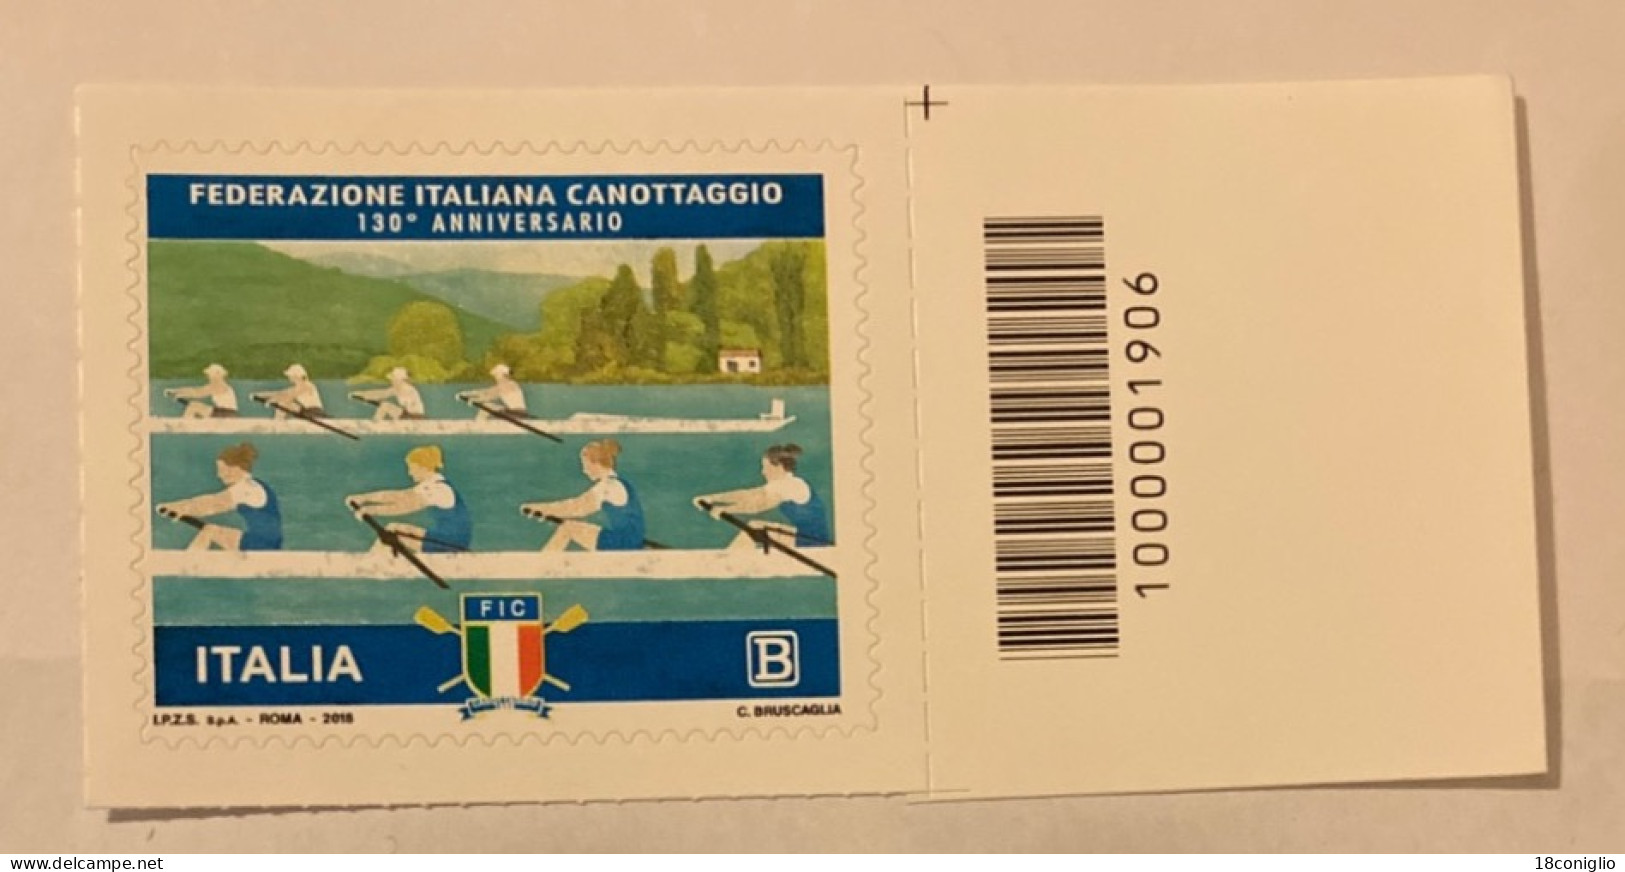 Italia 2018 Codice A Barre 1906 Federazione Italiana Canottaggio - Bar-code